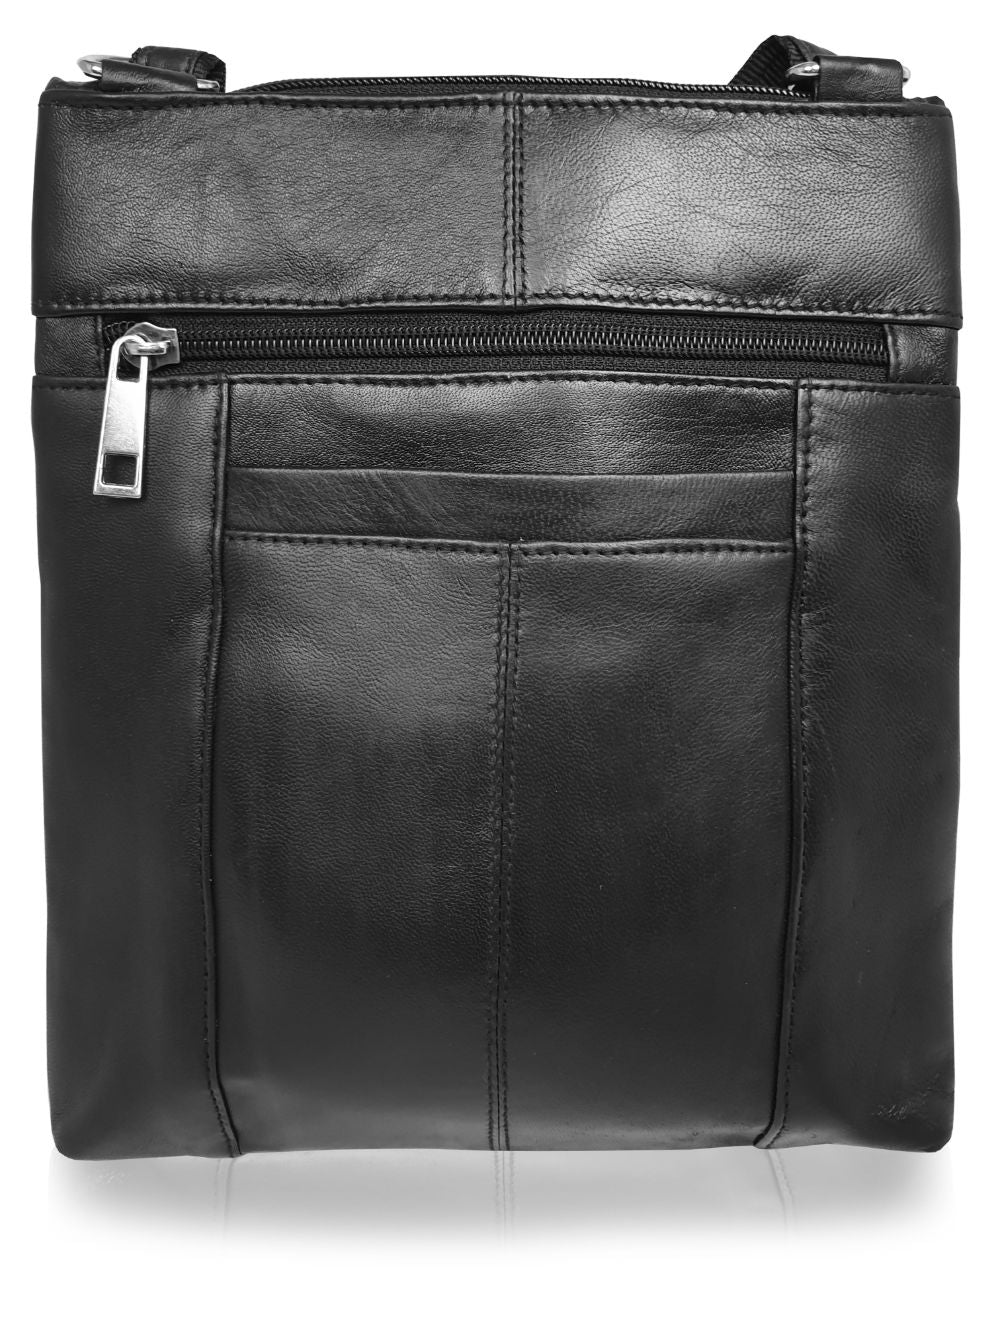 Roamlite Mens Travel Pouch Black Leather RL177K back